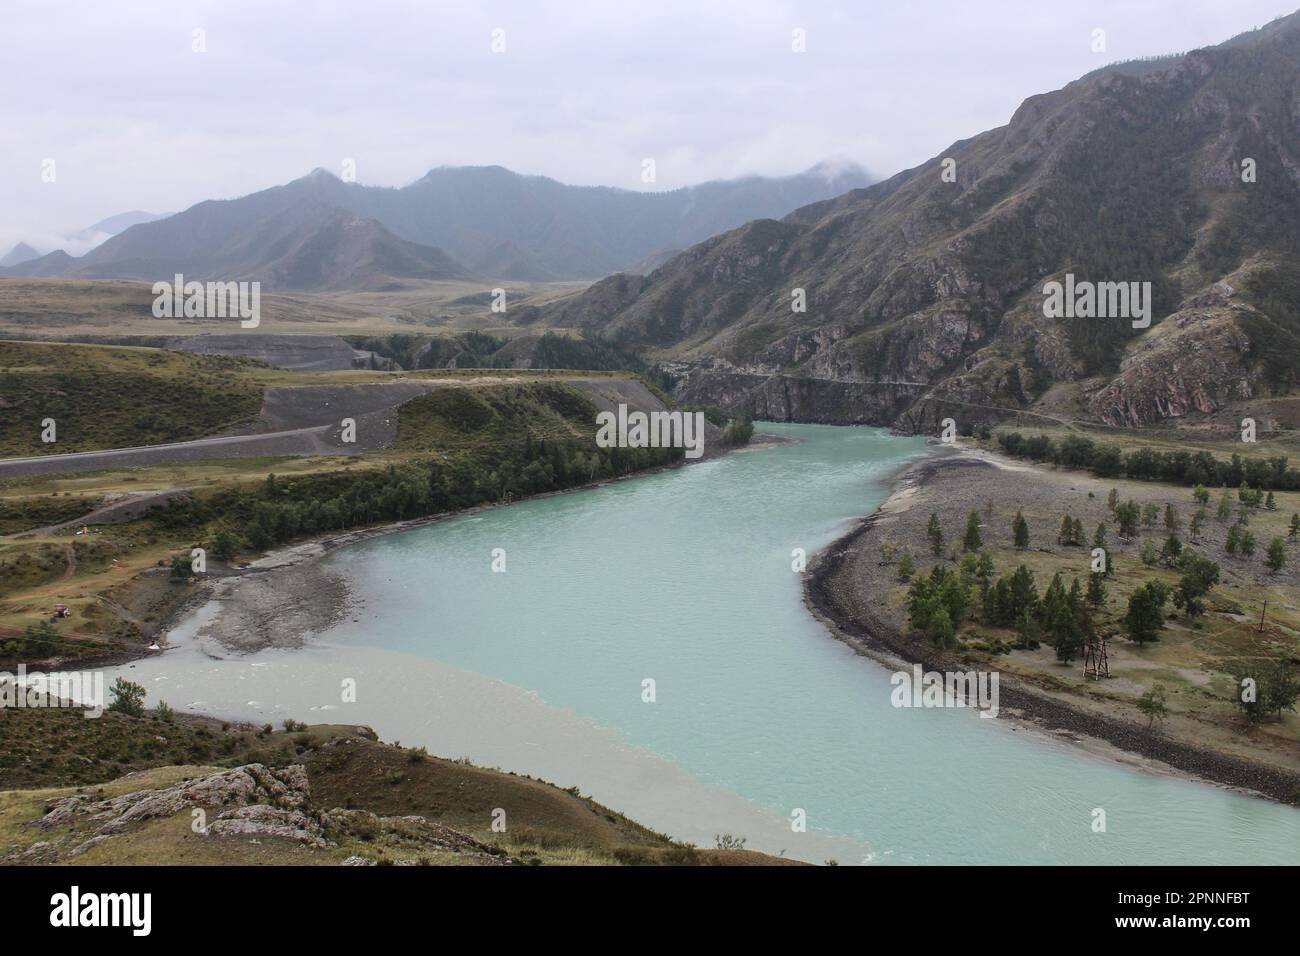 Der Zusammenfluss von zwei Flüssen verschiedener Farben, Chuya und Katun, zu einem. Berglandschaft, Altai Republik, Russland. Hochwertiges Foto Stockfoto